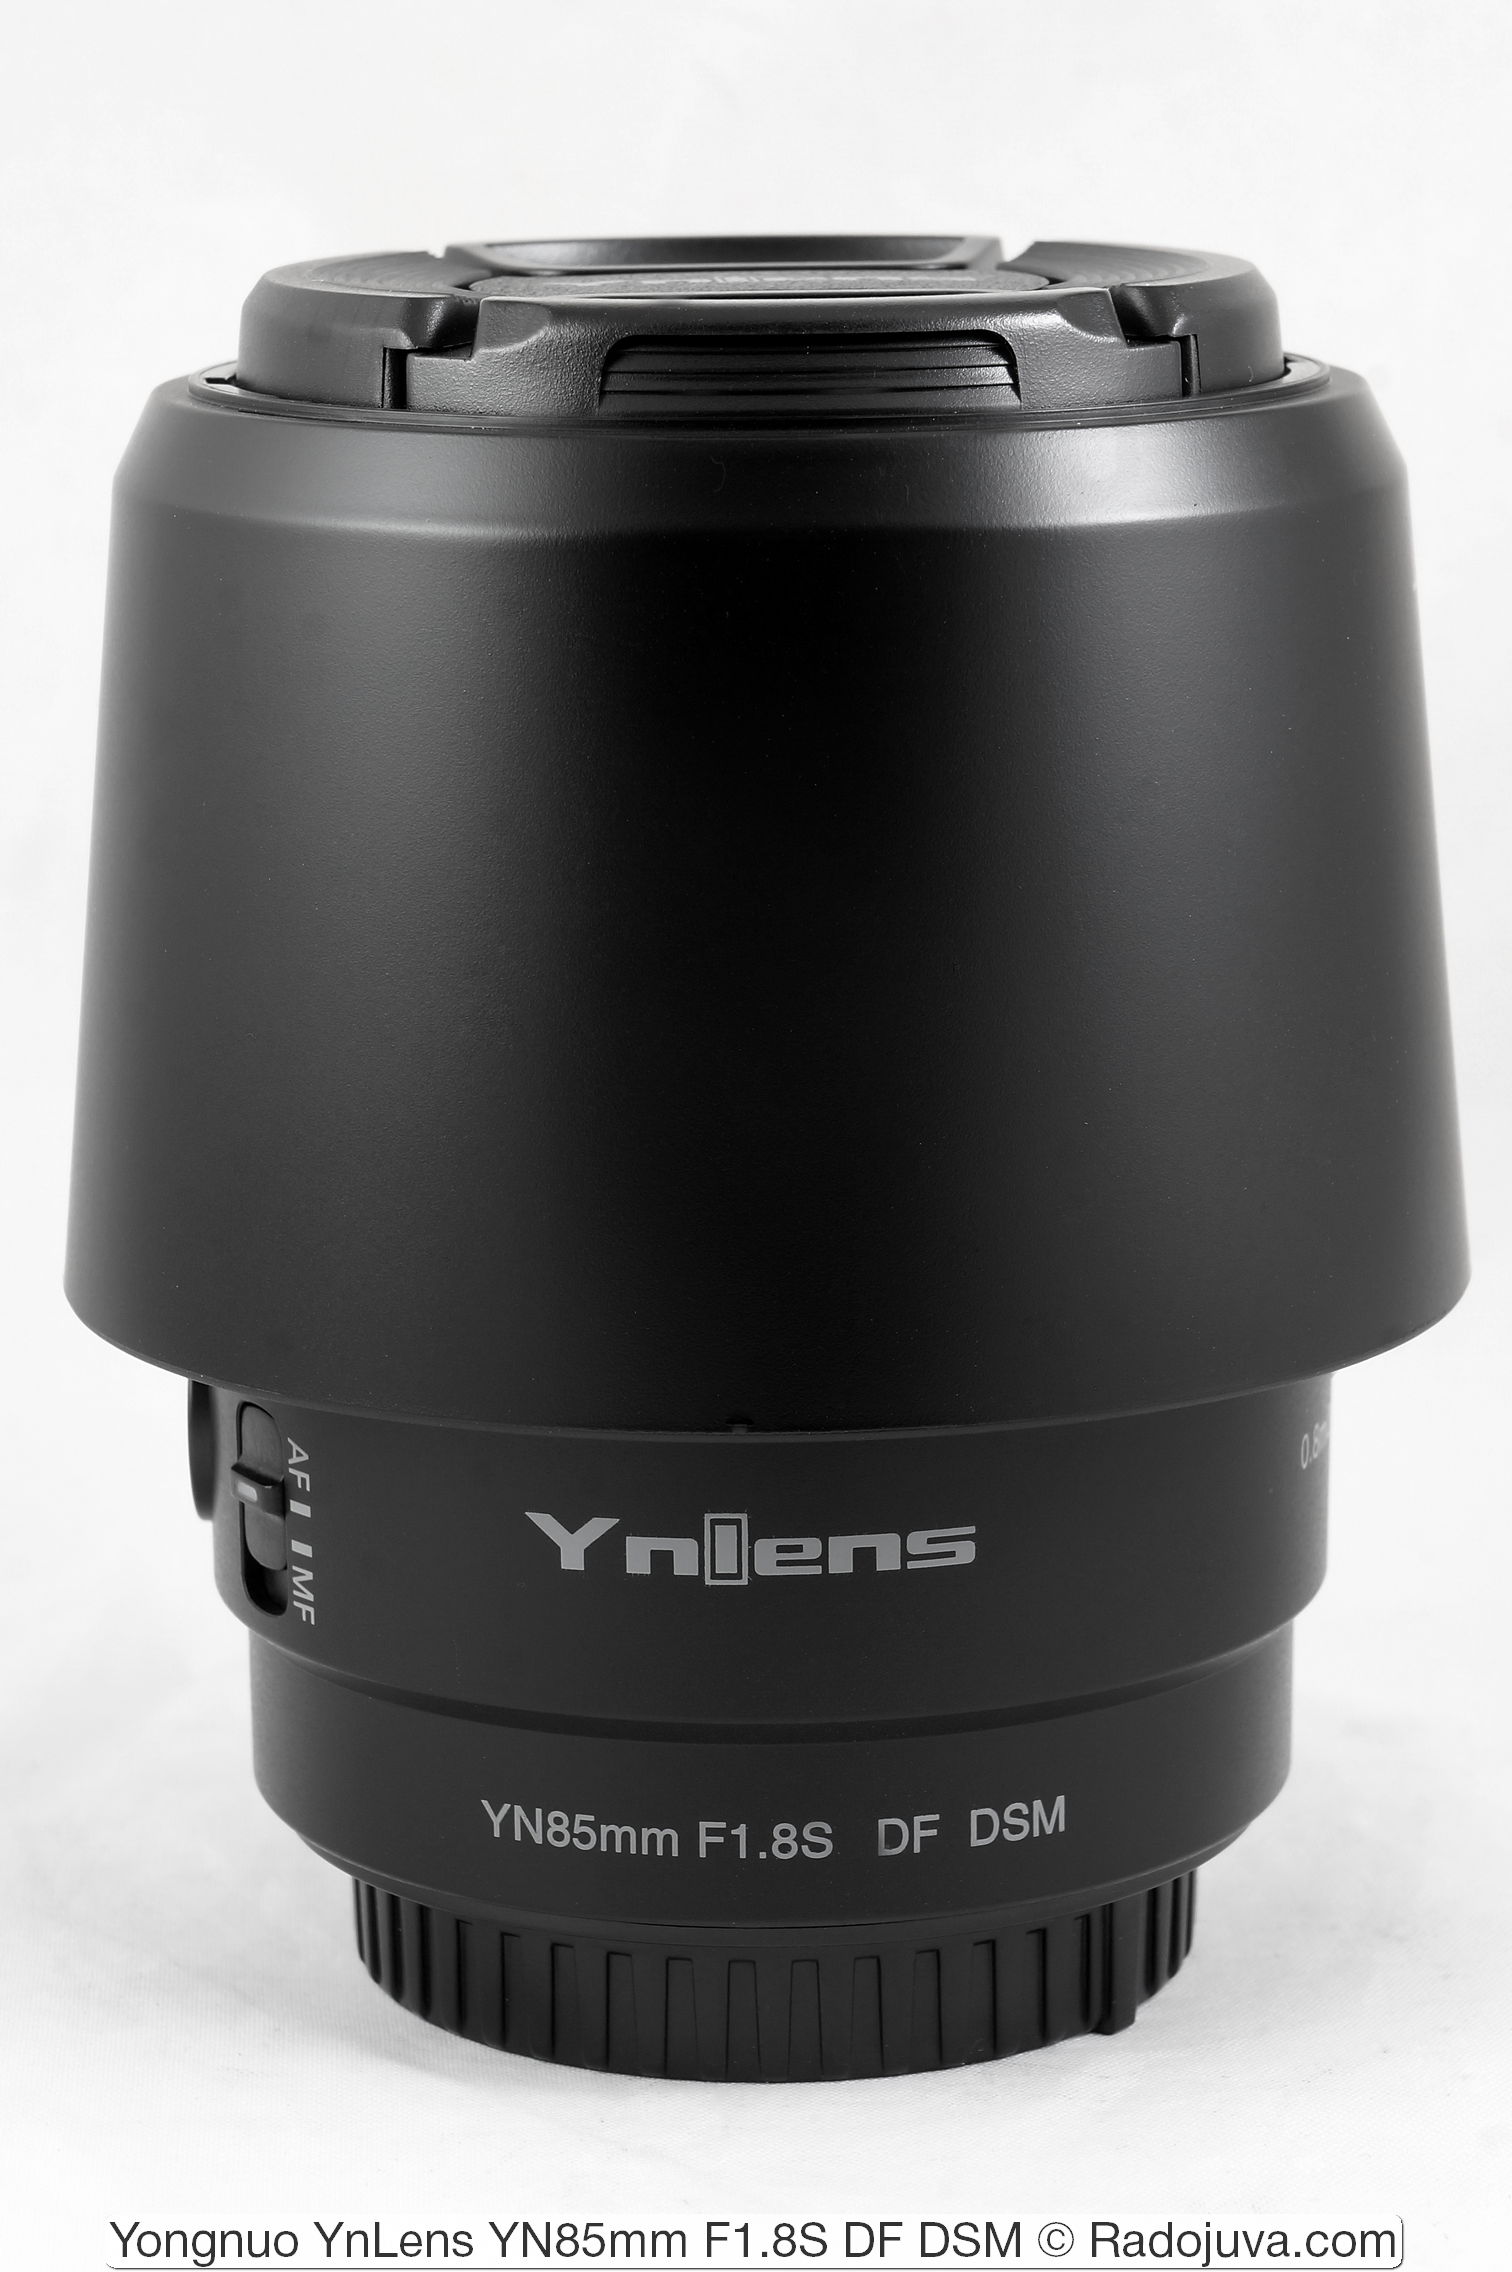 Yongnuo YnLens YN85mm F1.8S DF DSM (for Sony E / FE)